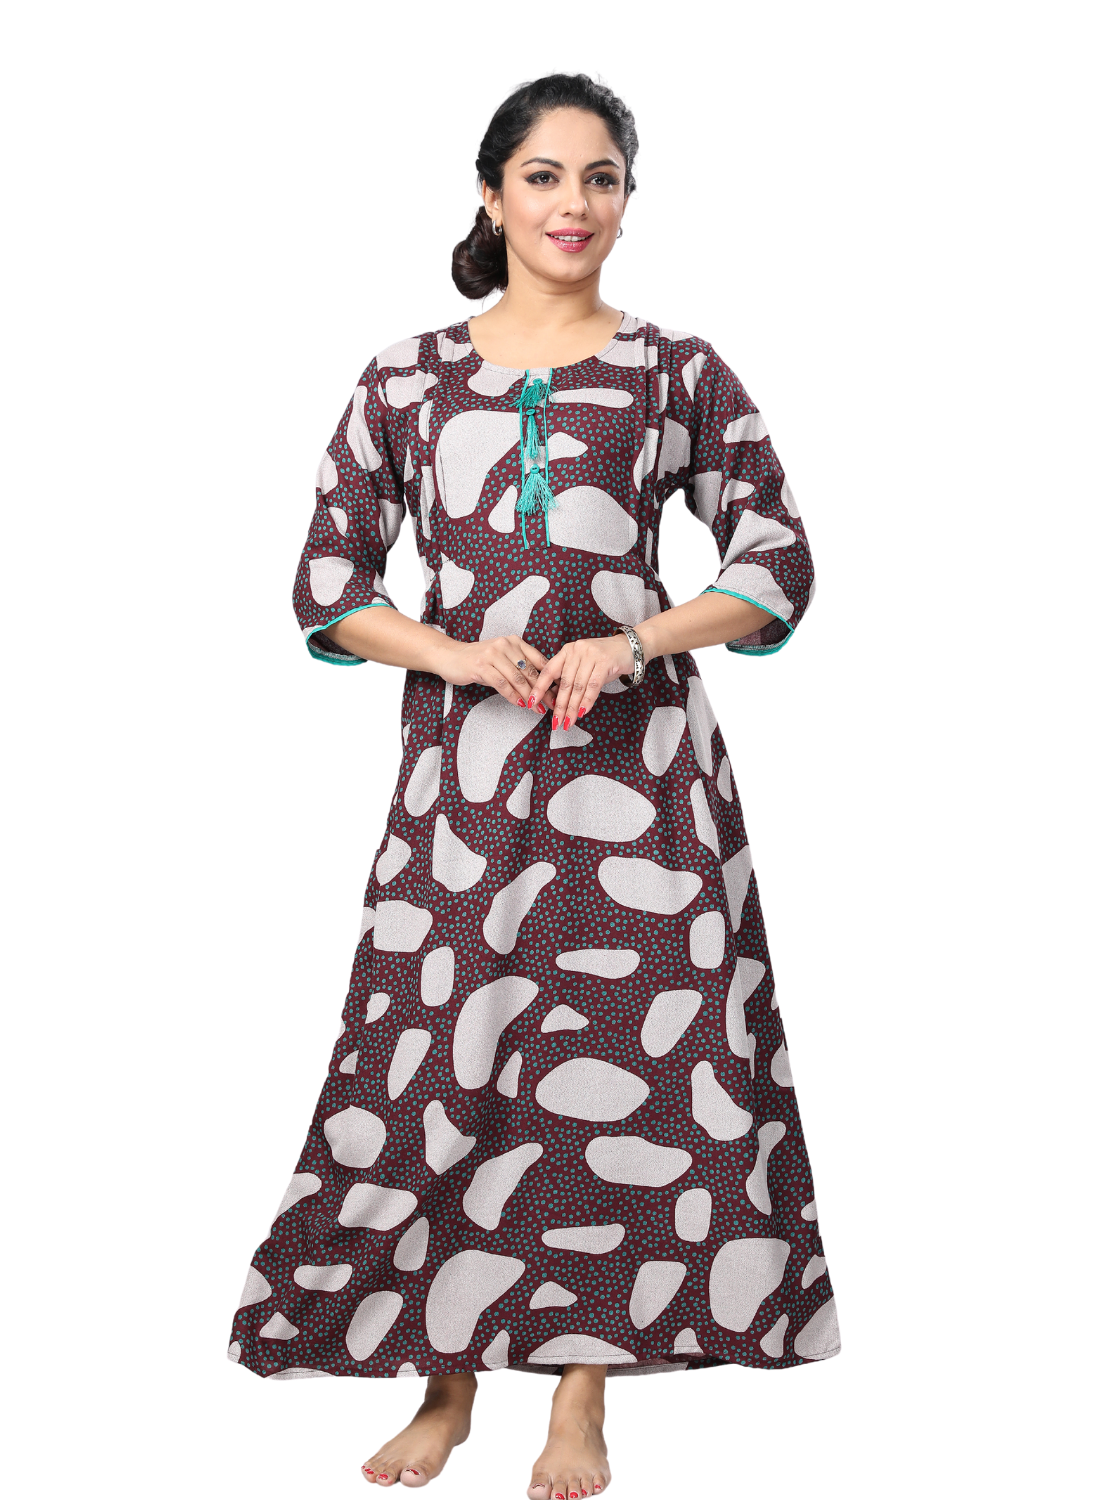 StylishMANGAI Alpine KURTI Style | Beautiful Stylish KURTI Model | Side Pocket | 3/4 Sleeve | Perfect Nightwear Collection's for Trendy Women's